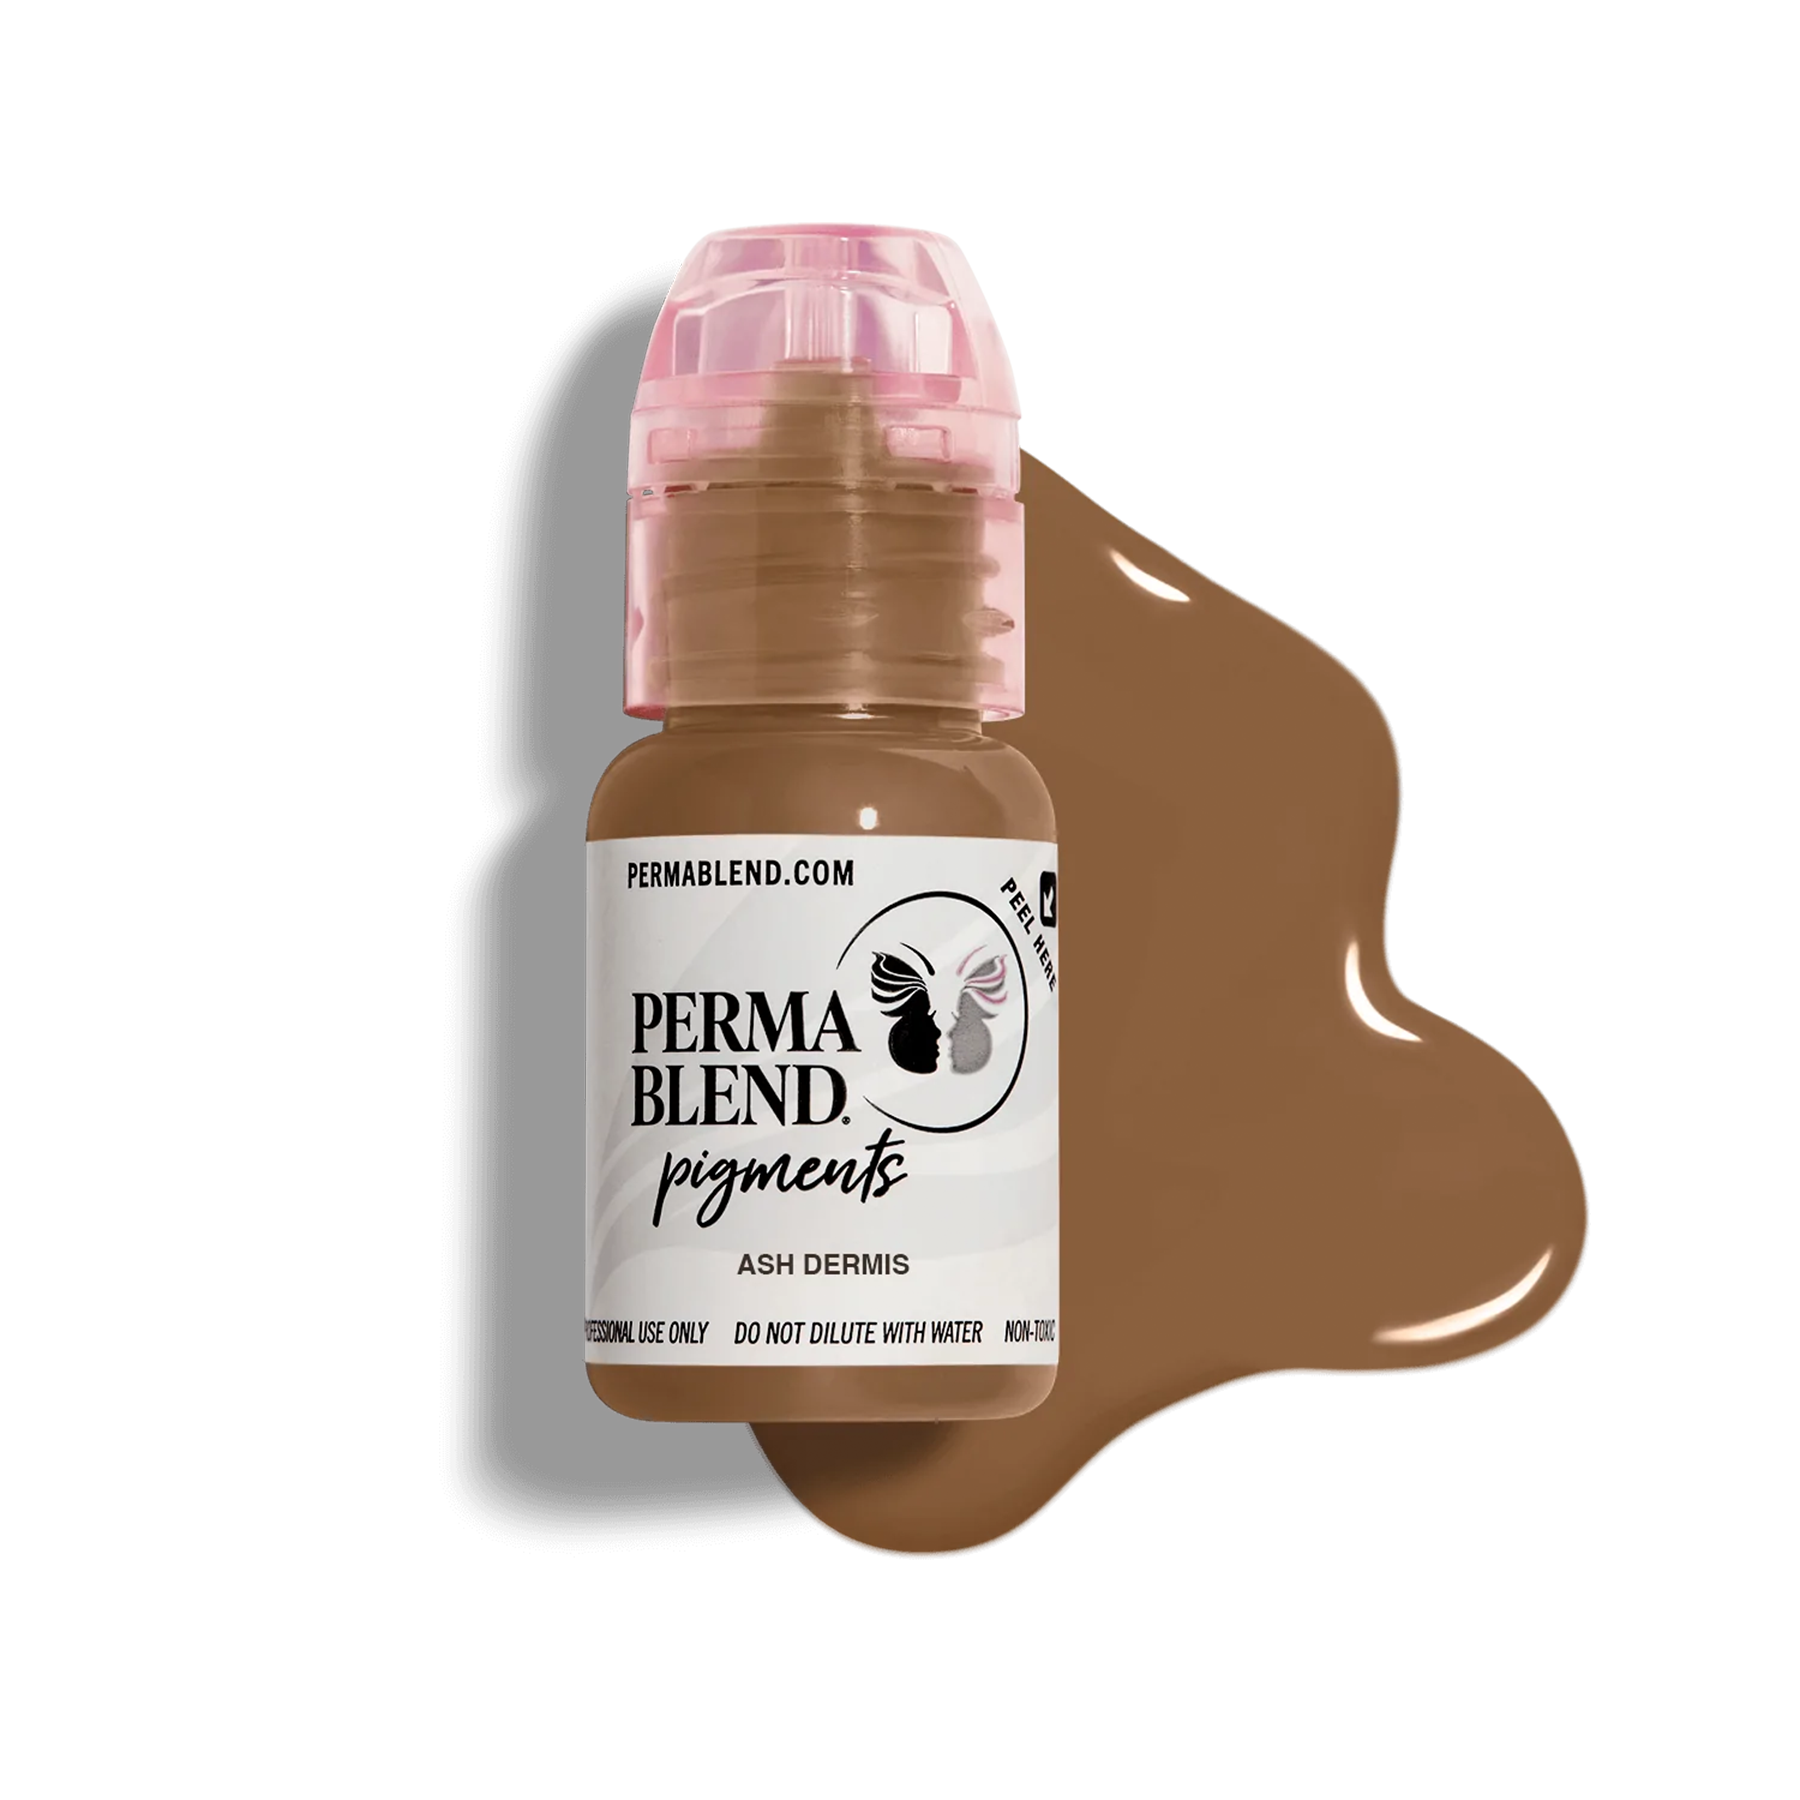 Ash Dermis, Scar pigment by Perma Blend, permanent makeup pigment for micropigmentation, front view with colour